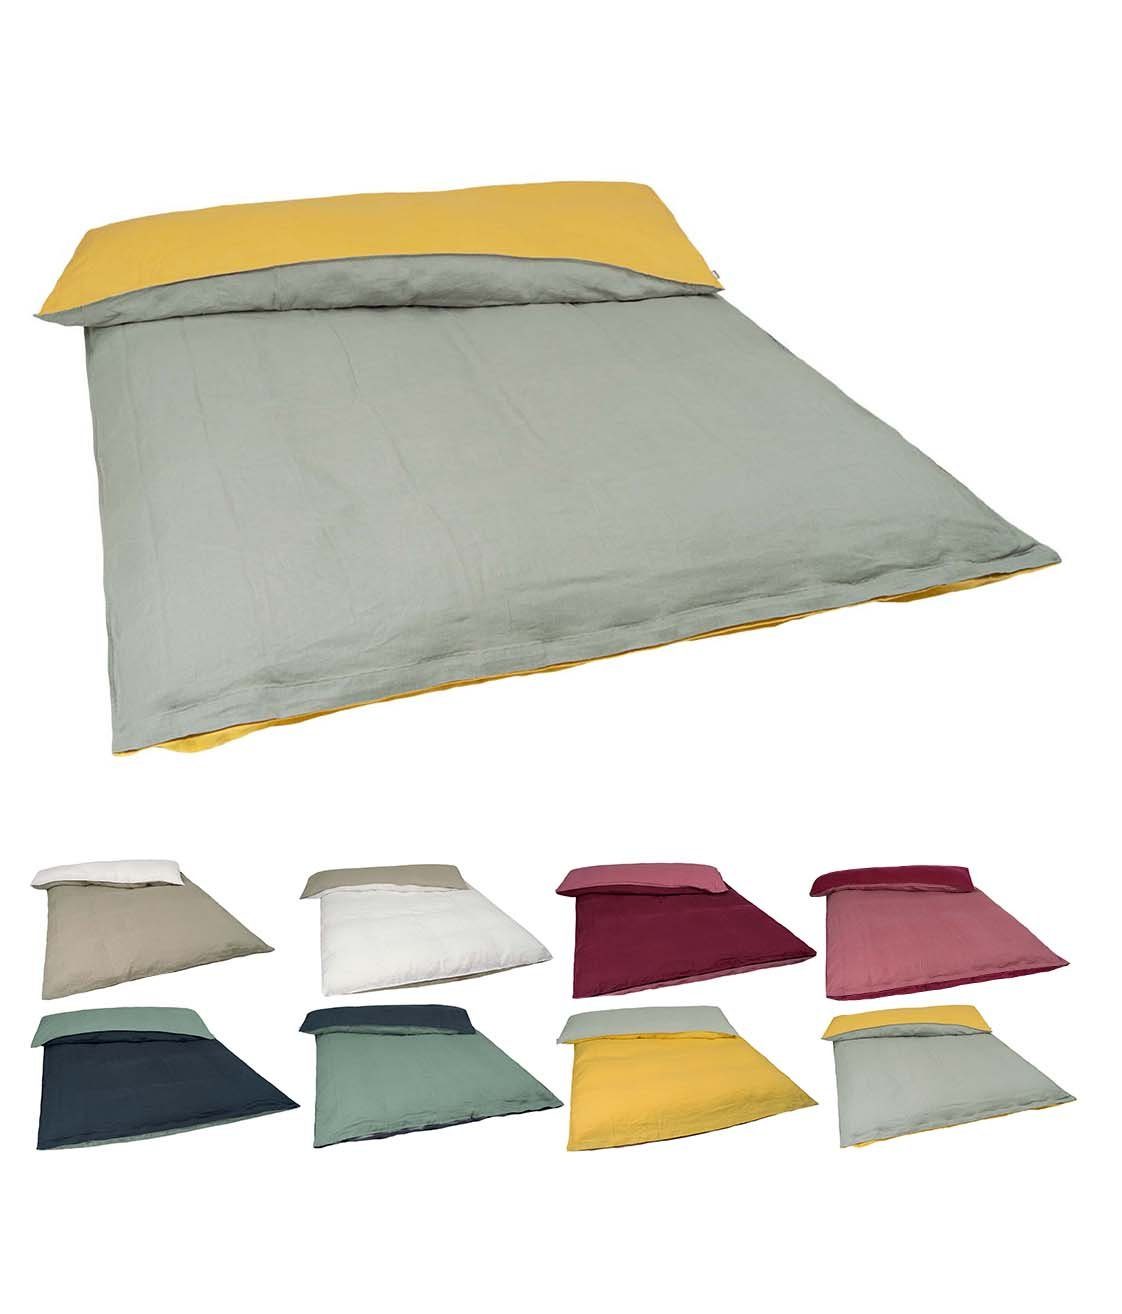 Bettwäsche »Leinen«, beties, Wende-Bettbezug ca. 135x200 cm 100% Leinen  Bettwäsche mit Reißverschluß im Stone-Washed Design in der Farbe  (zitronen-gelb/stein-grau) online kaufen | OTTO